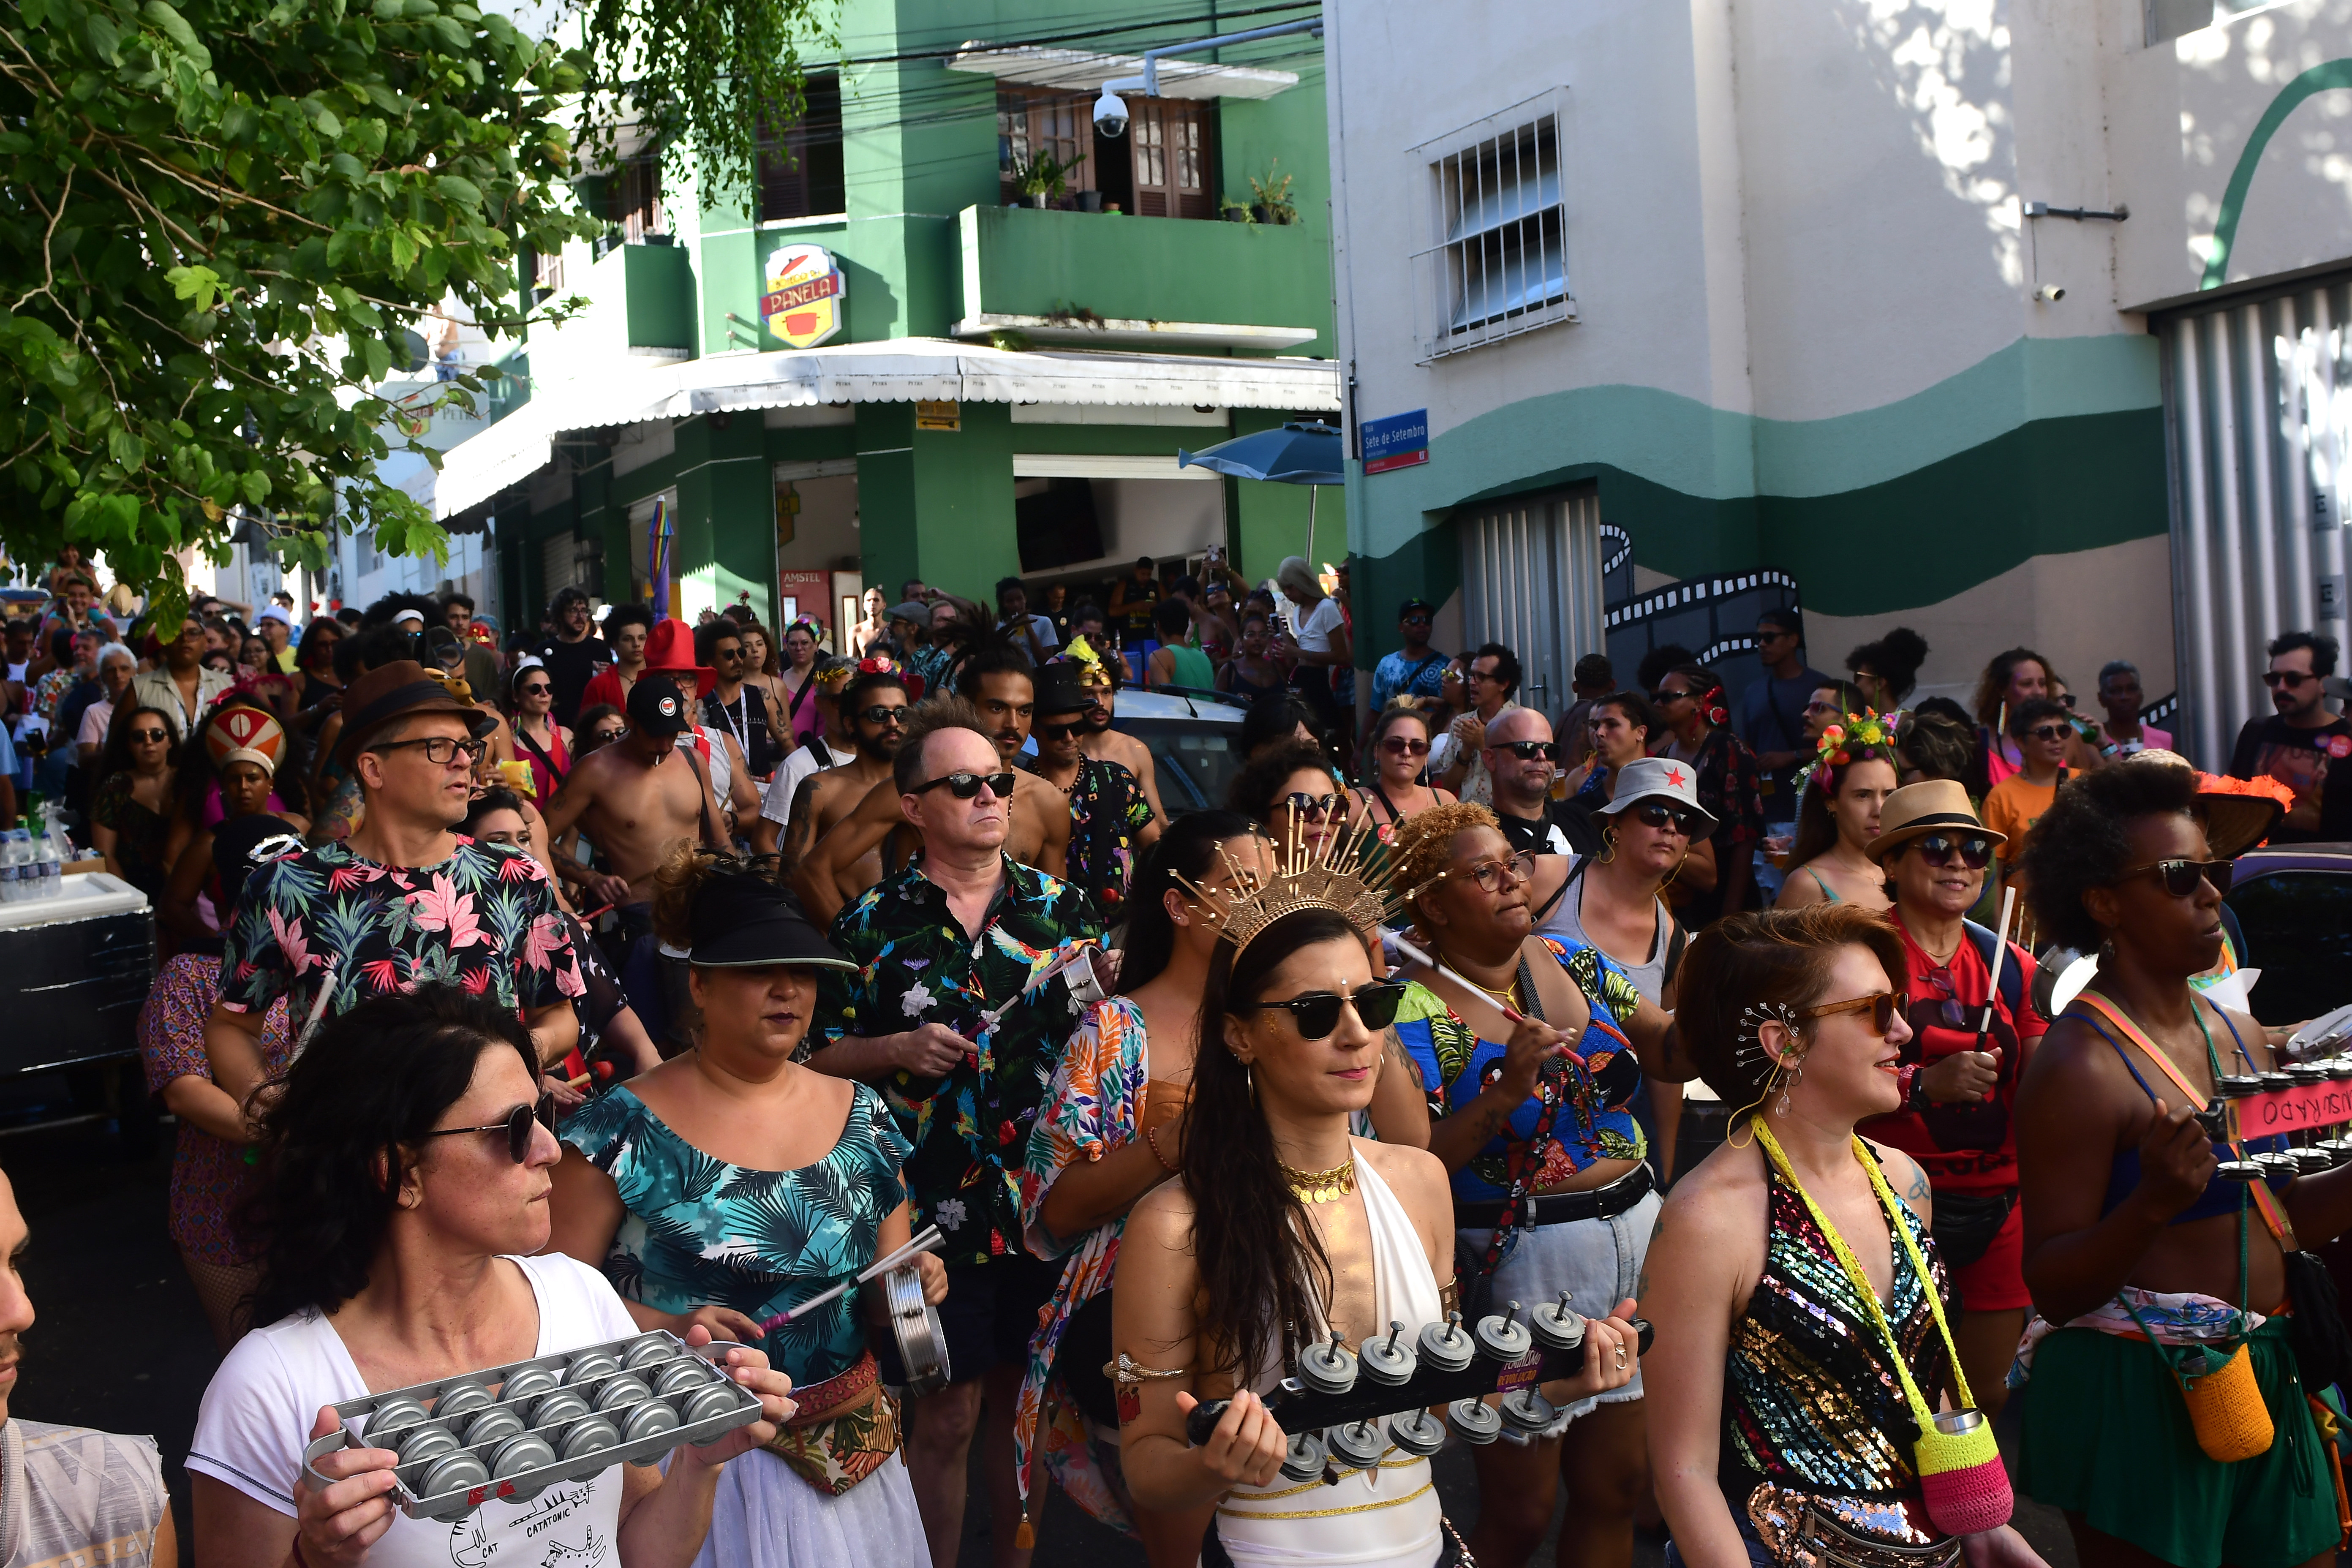 Decreto publicado no Diário Oficial do município revela novo horário e esclarece regras para desfiles de rua na Capital